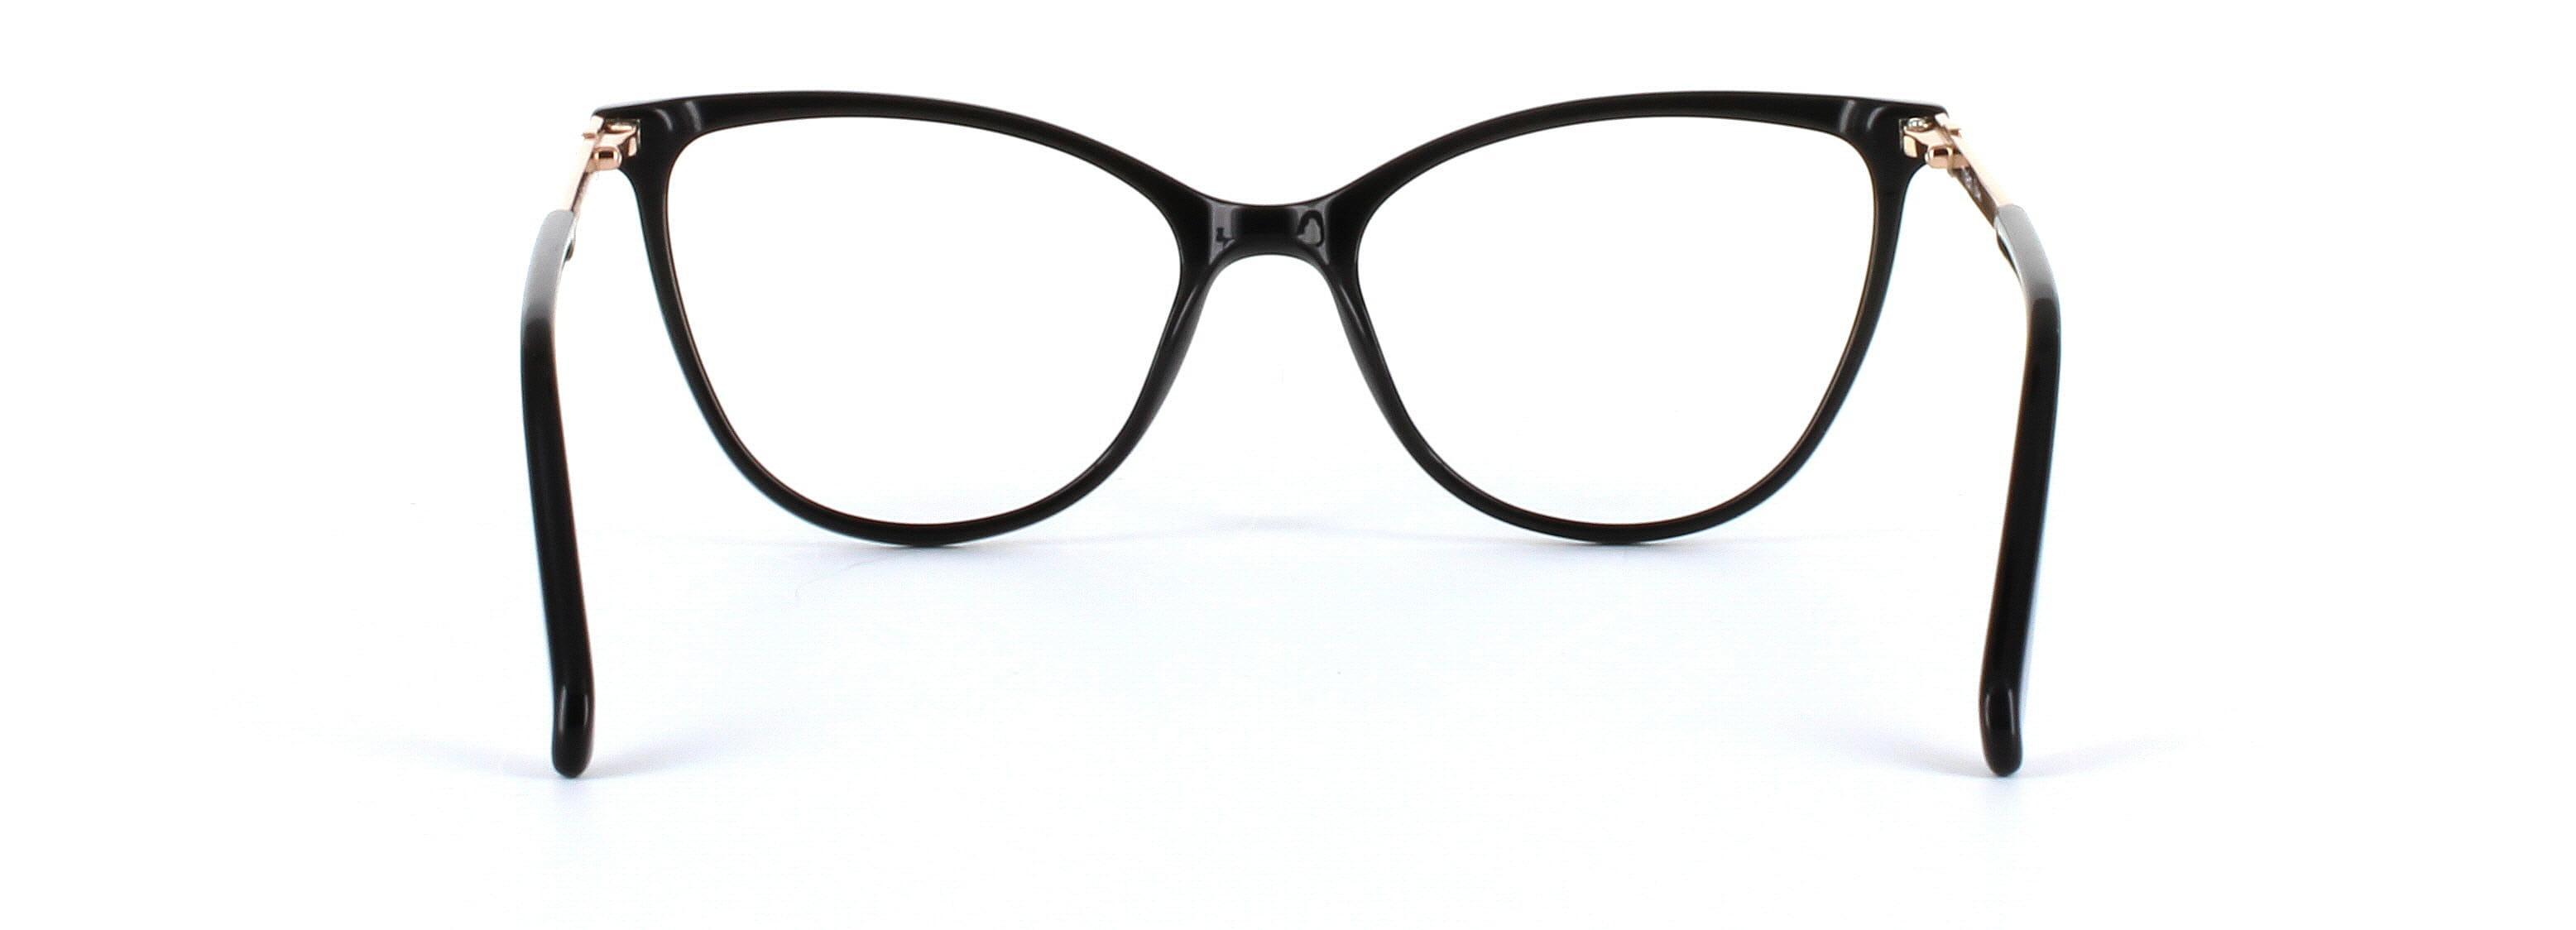 Callie Black Full Rim Cat Eye Acetate Glasses - Image View 3